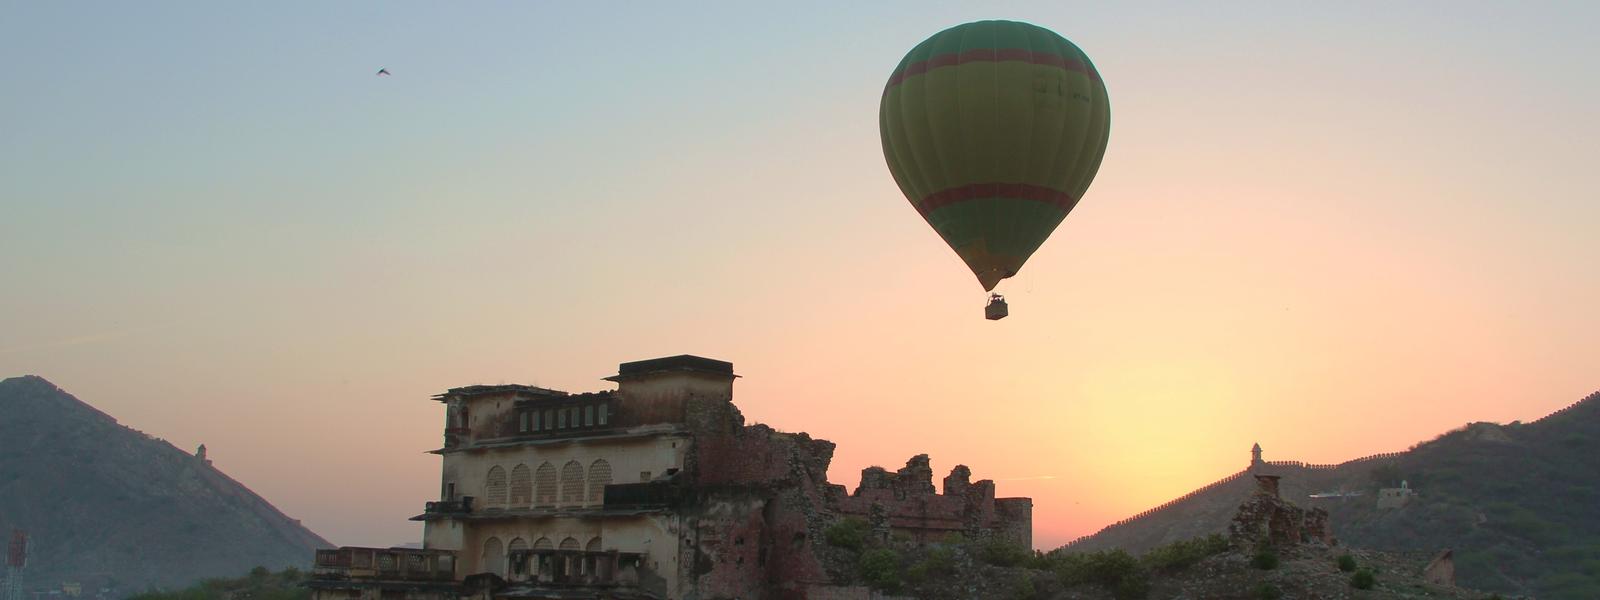 Jaipur hot balloon